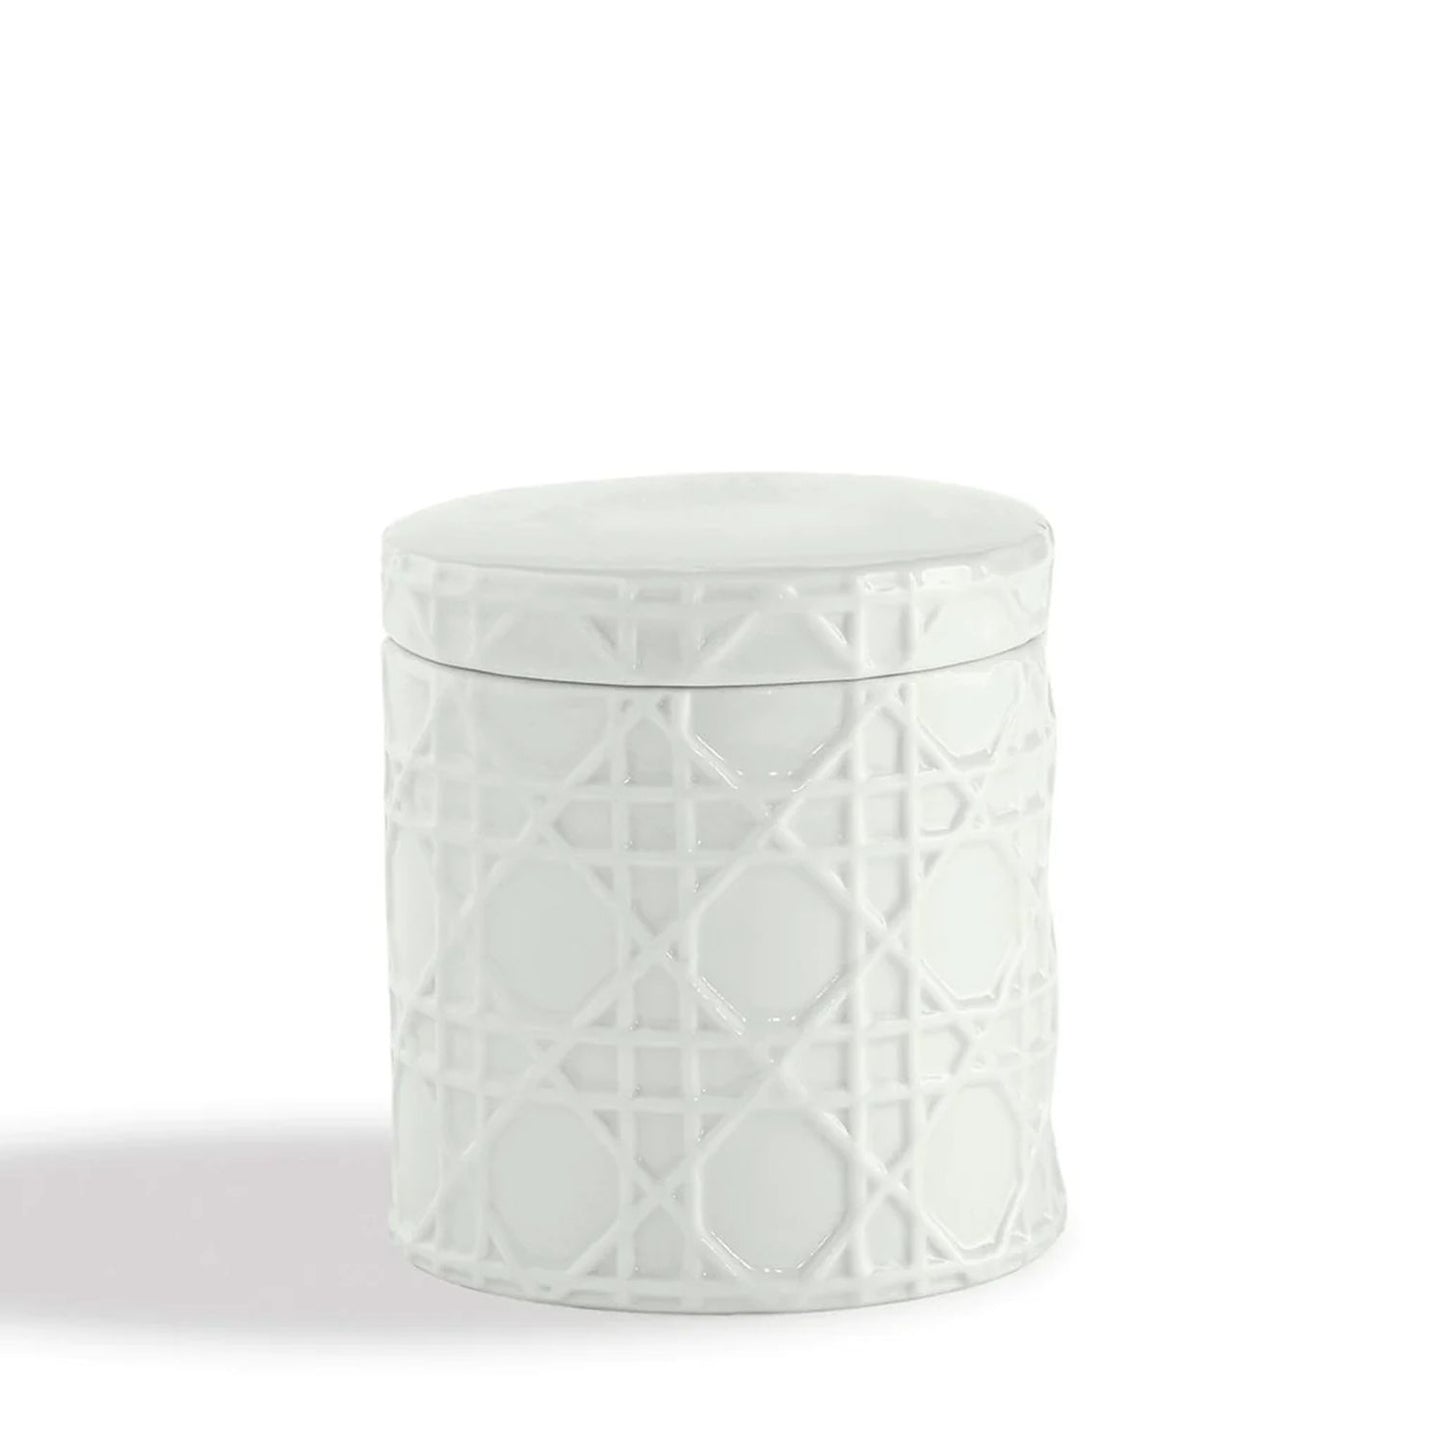 Kassatex Rattan Bath Accessories Cotton Jar